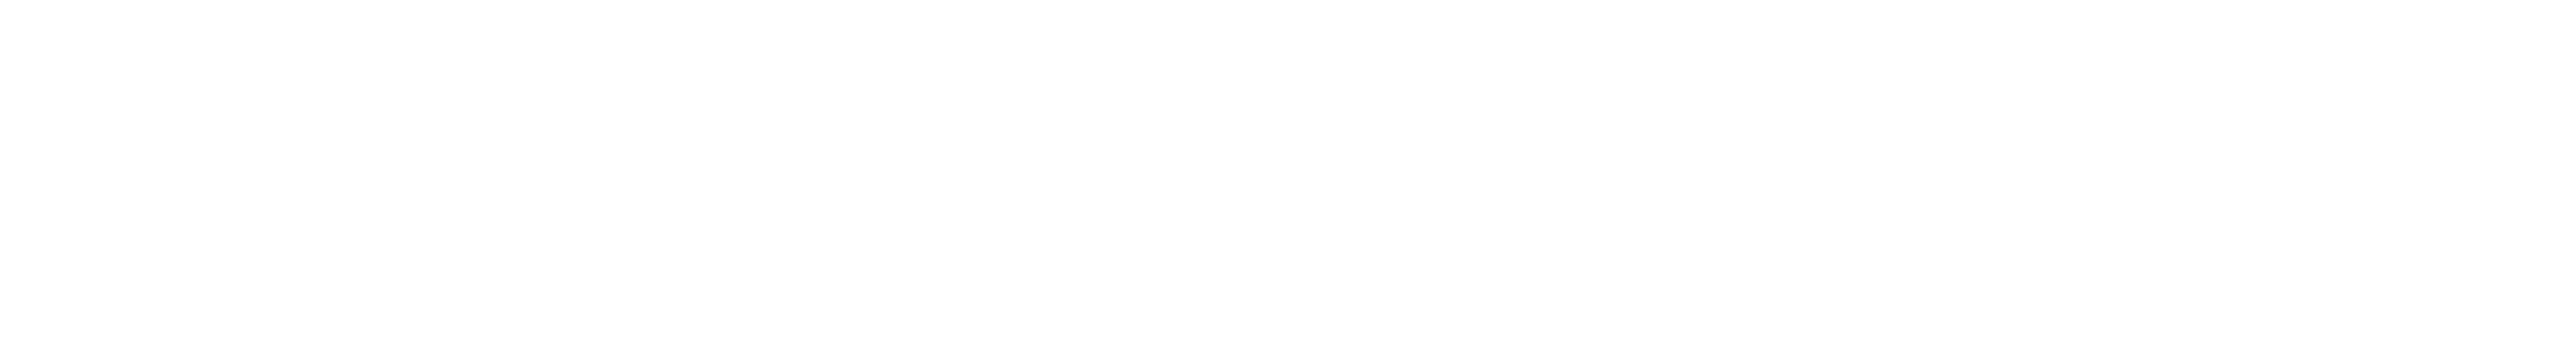 Dead Zone logo